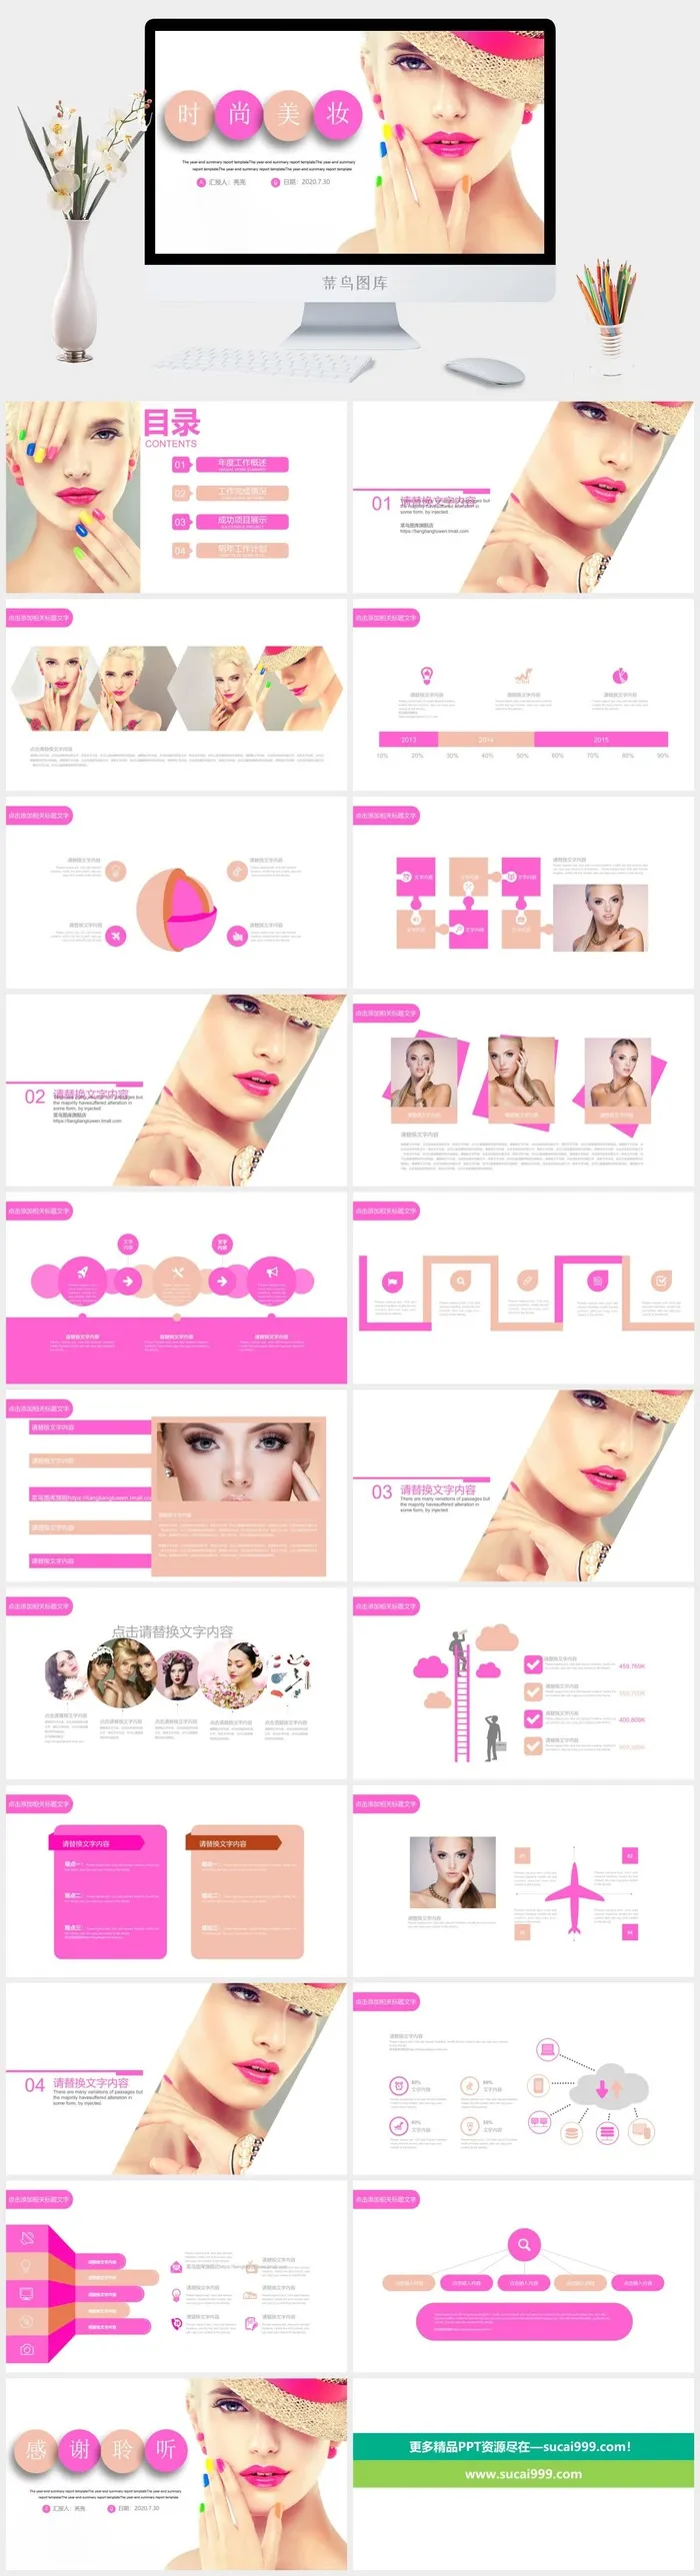 化妆品  时尚美妆 产品介绍 企业宣传